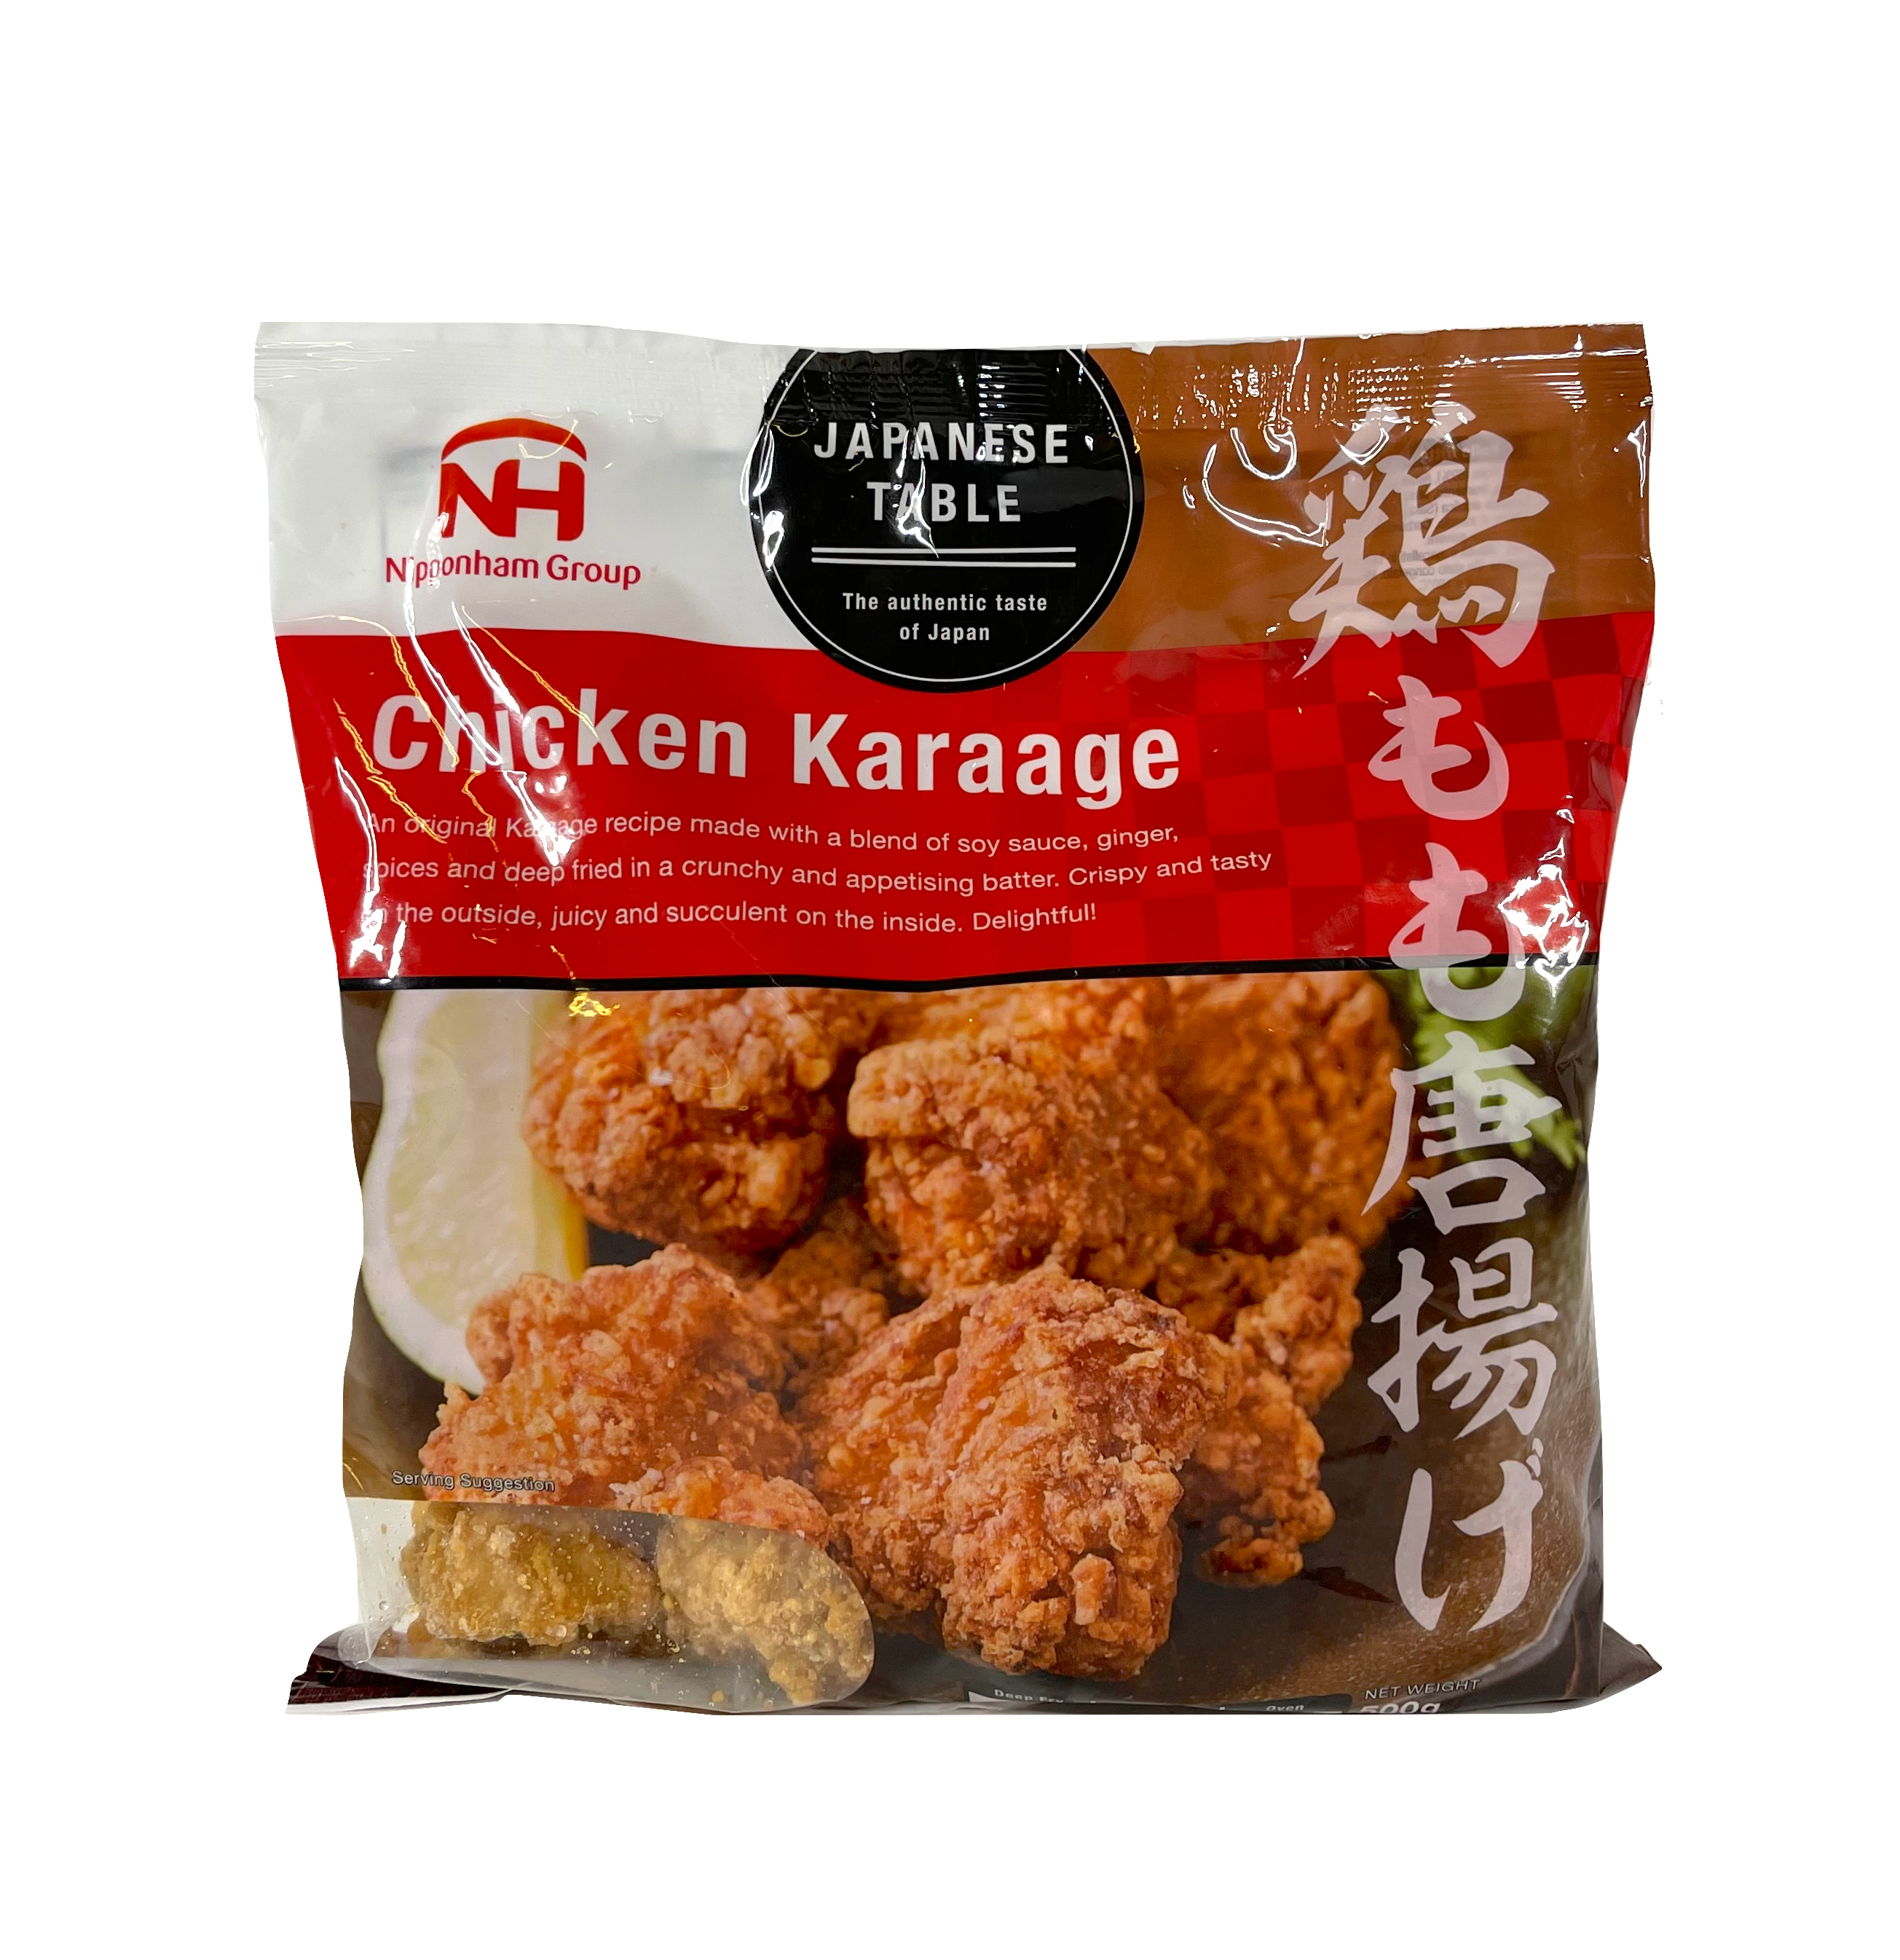 Kyckling Karaage Fryst 500g Nipponham Group Japan